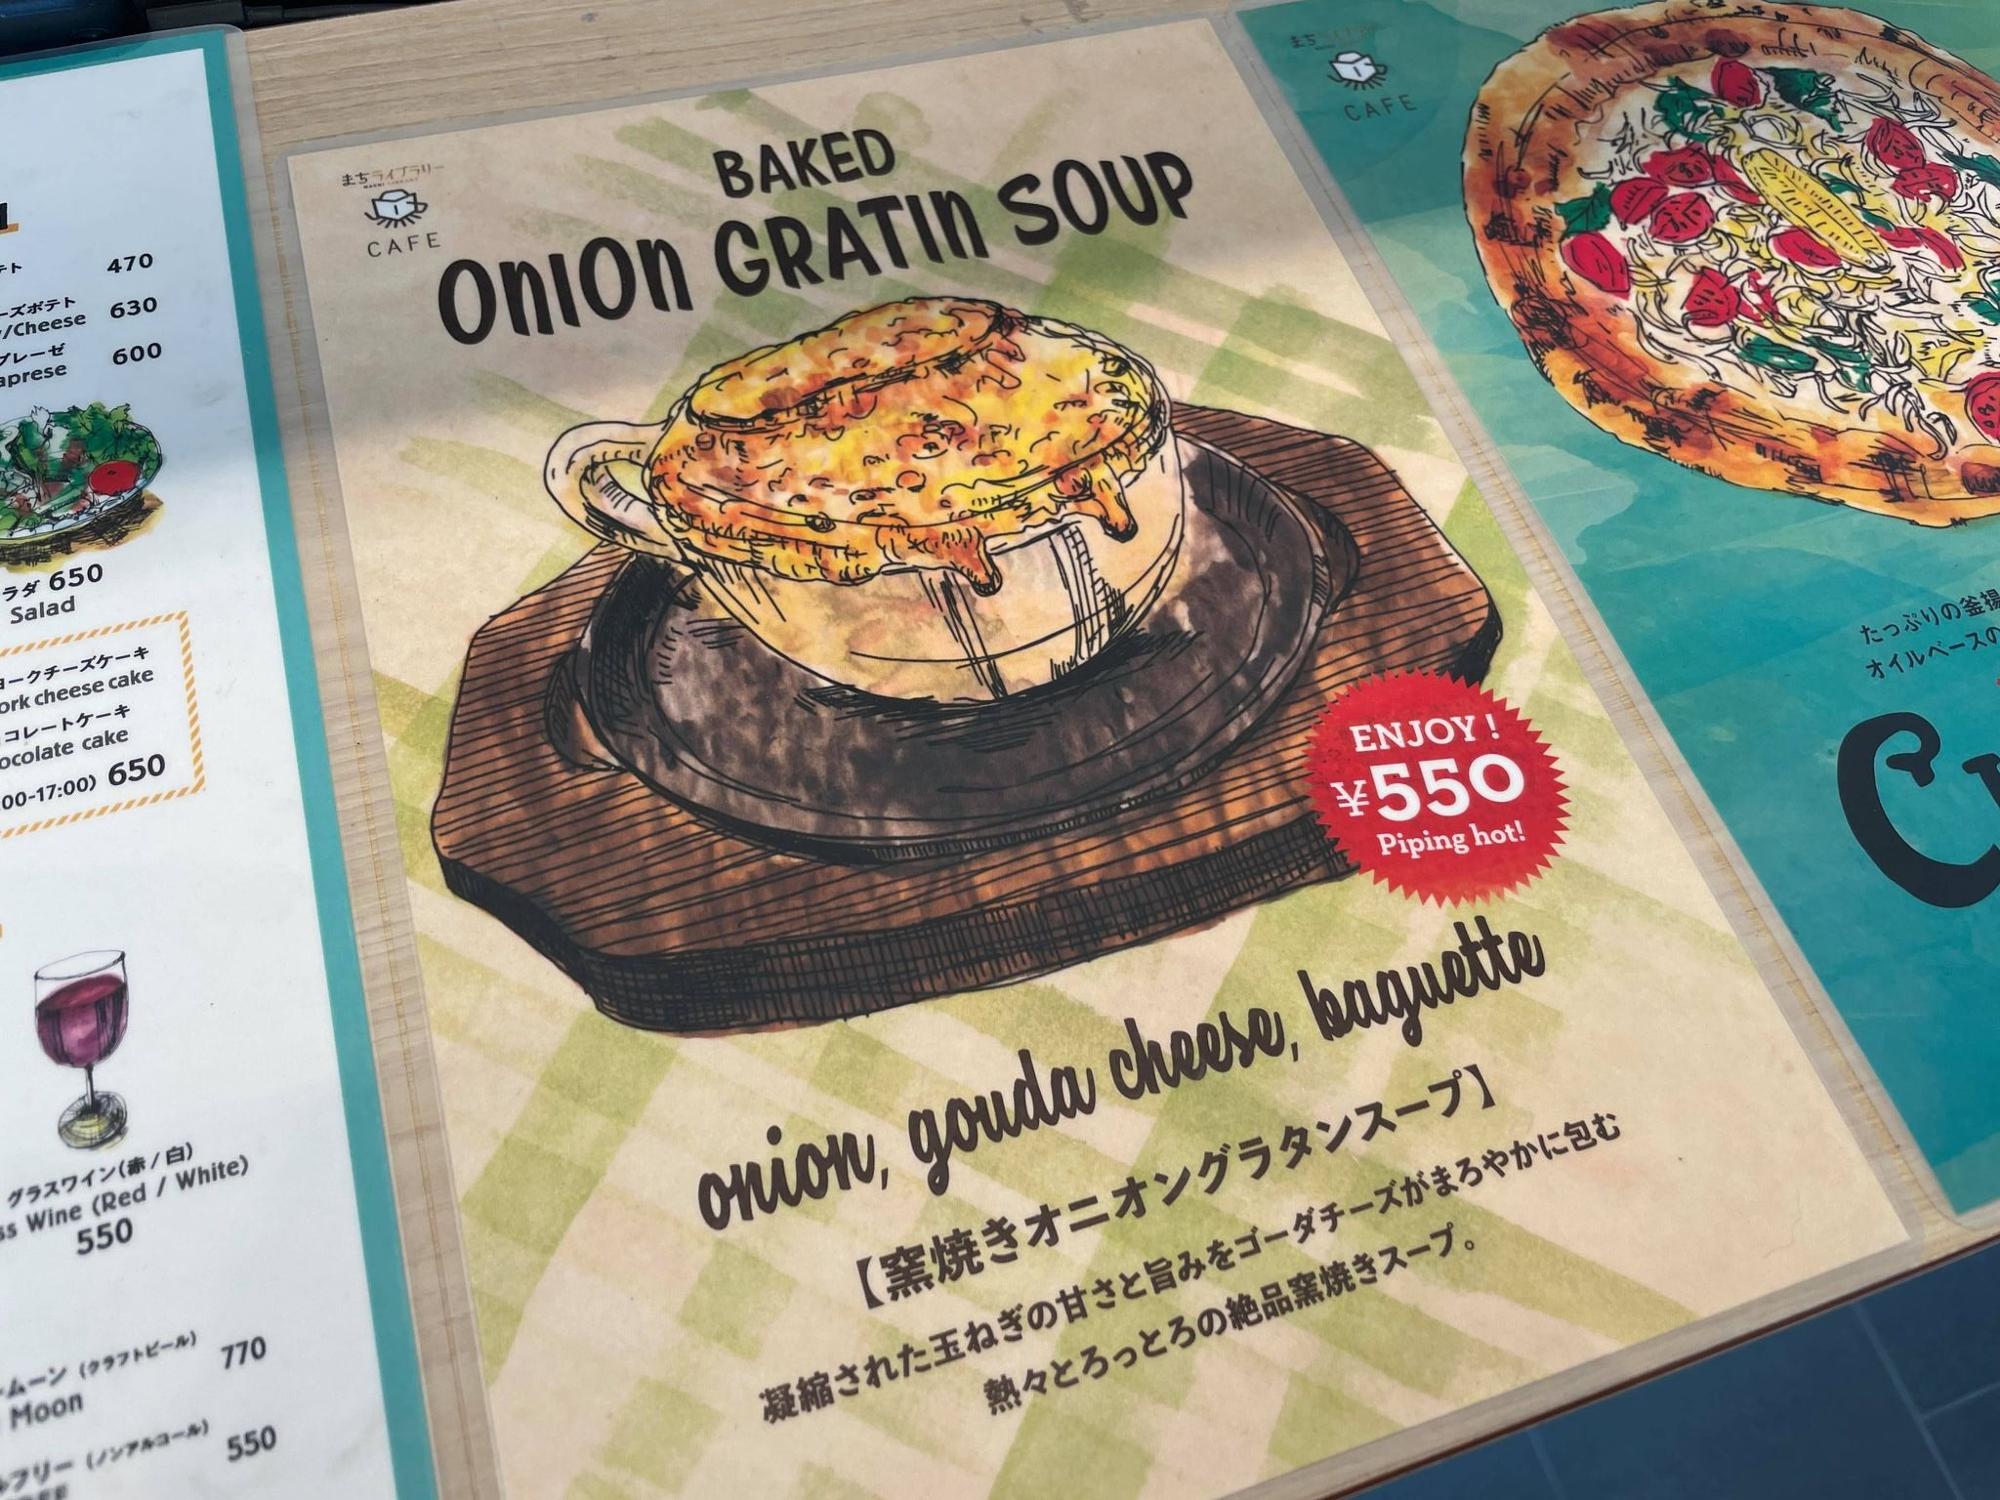 東大阪市 テラス席はペットも可 本格ピザ窯で焼いたオニオングラタンスープが美味しすぎた件 なかしまあすか Yahoo Japan クリエイターズプログラム